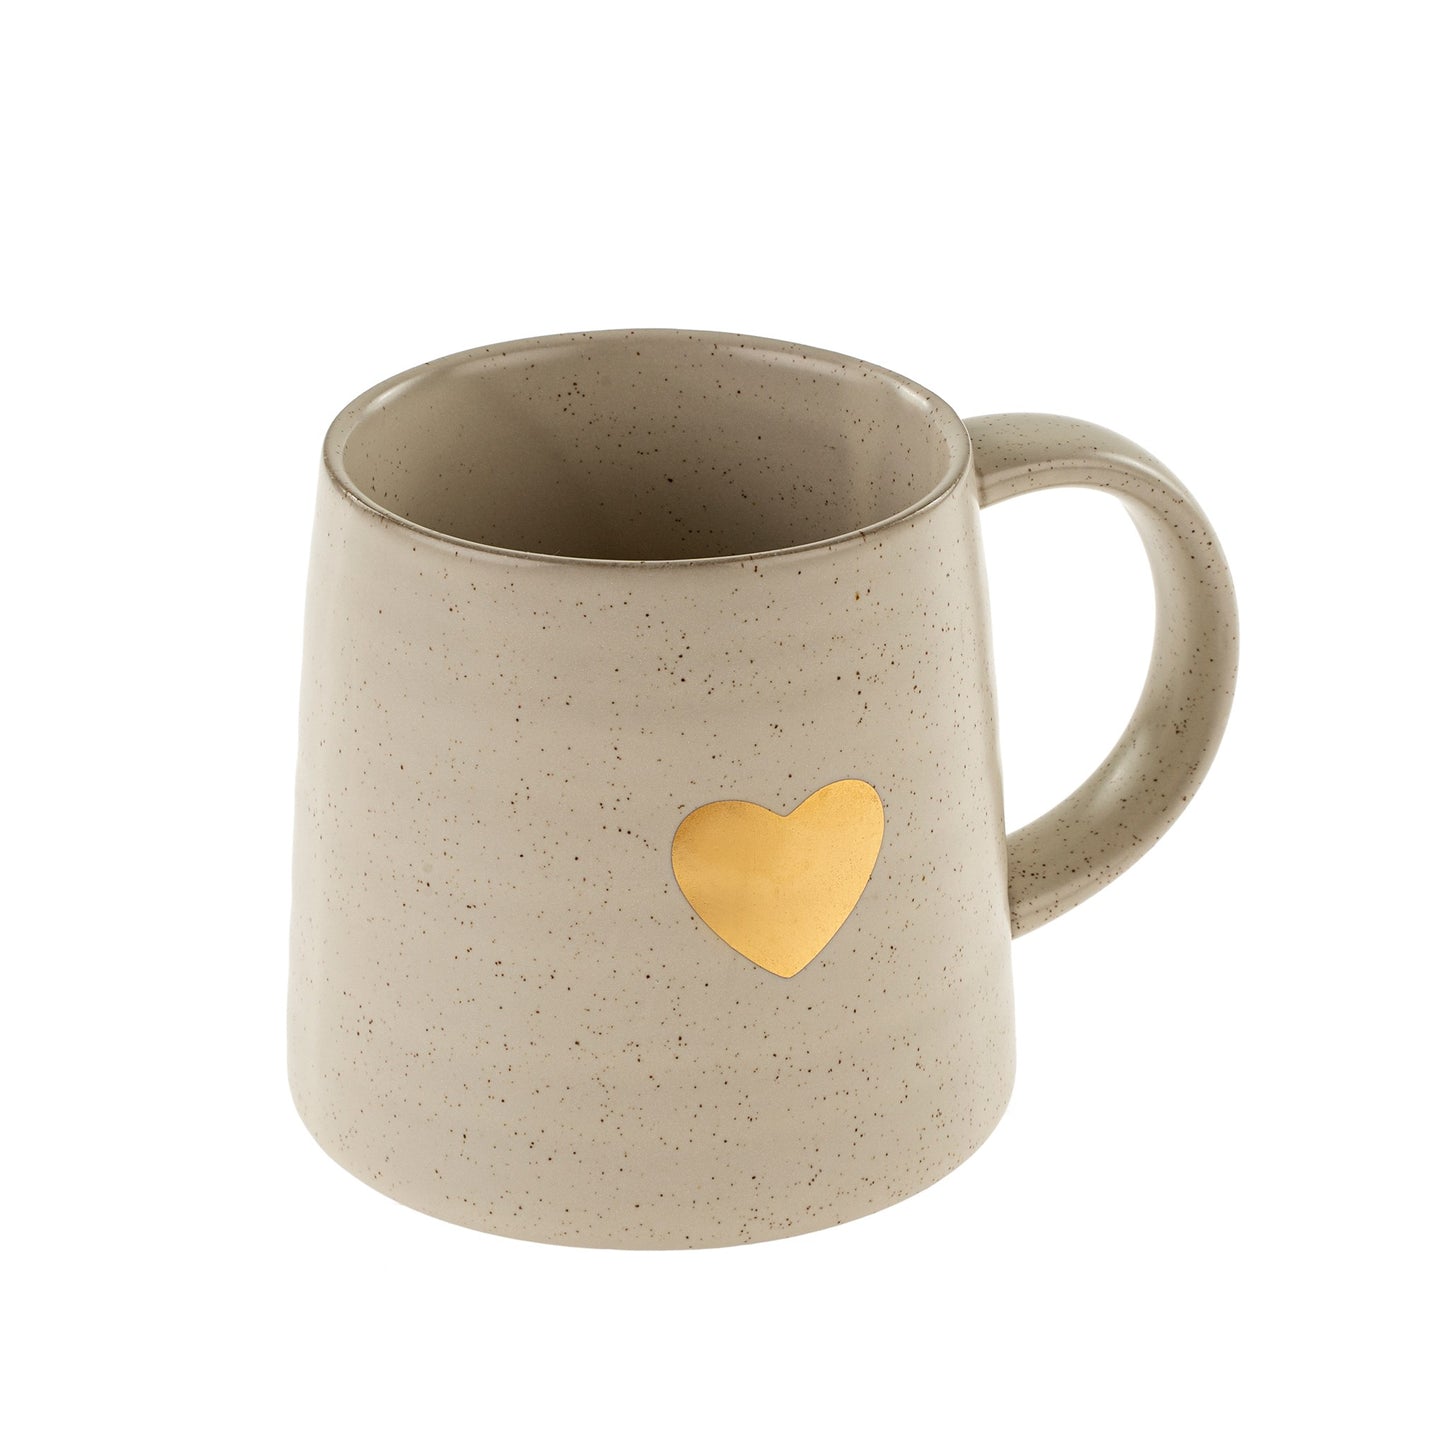 Gold heart mug